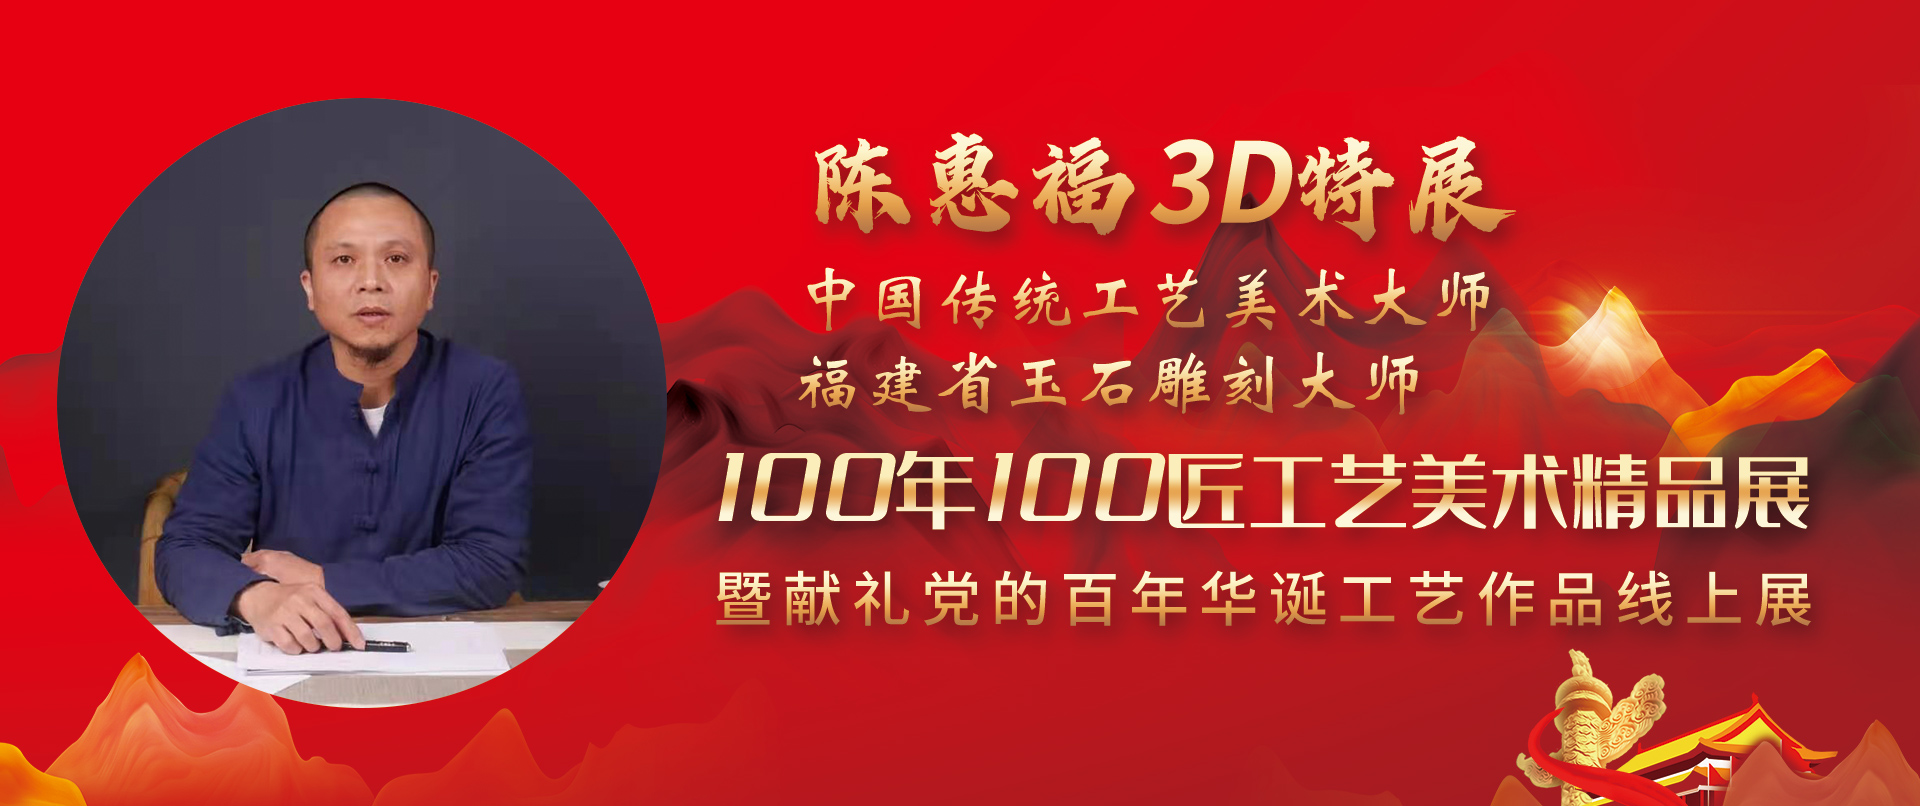 陈惠福3D特展-100年100匠工艺美术精品展